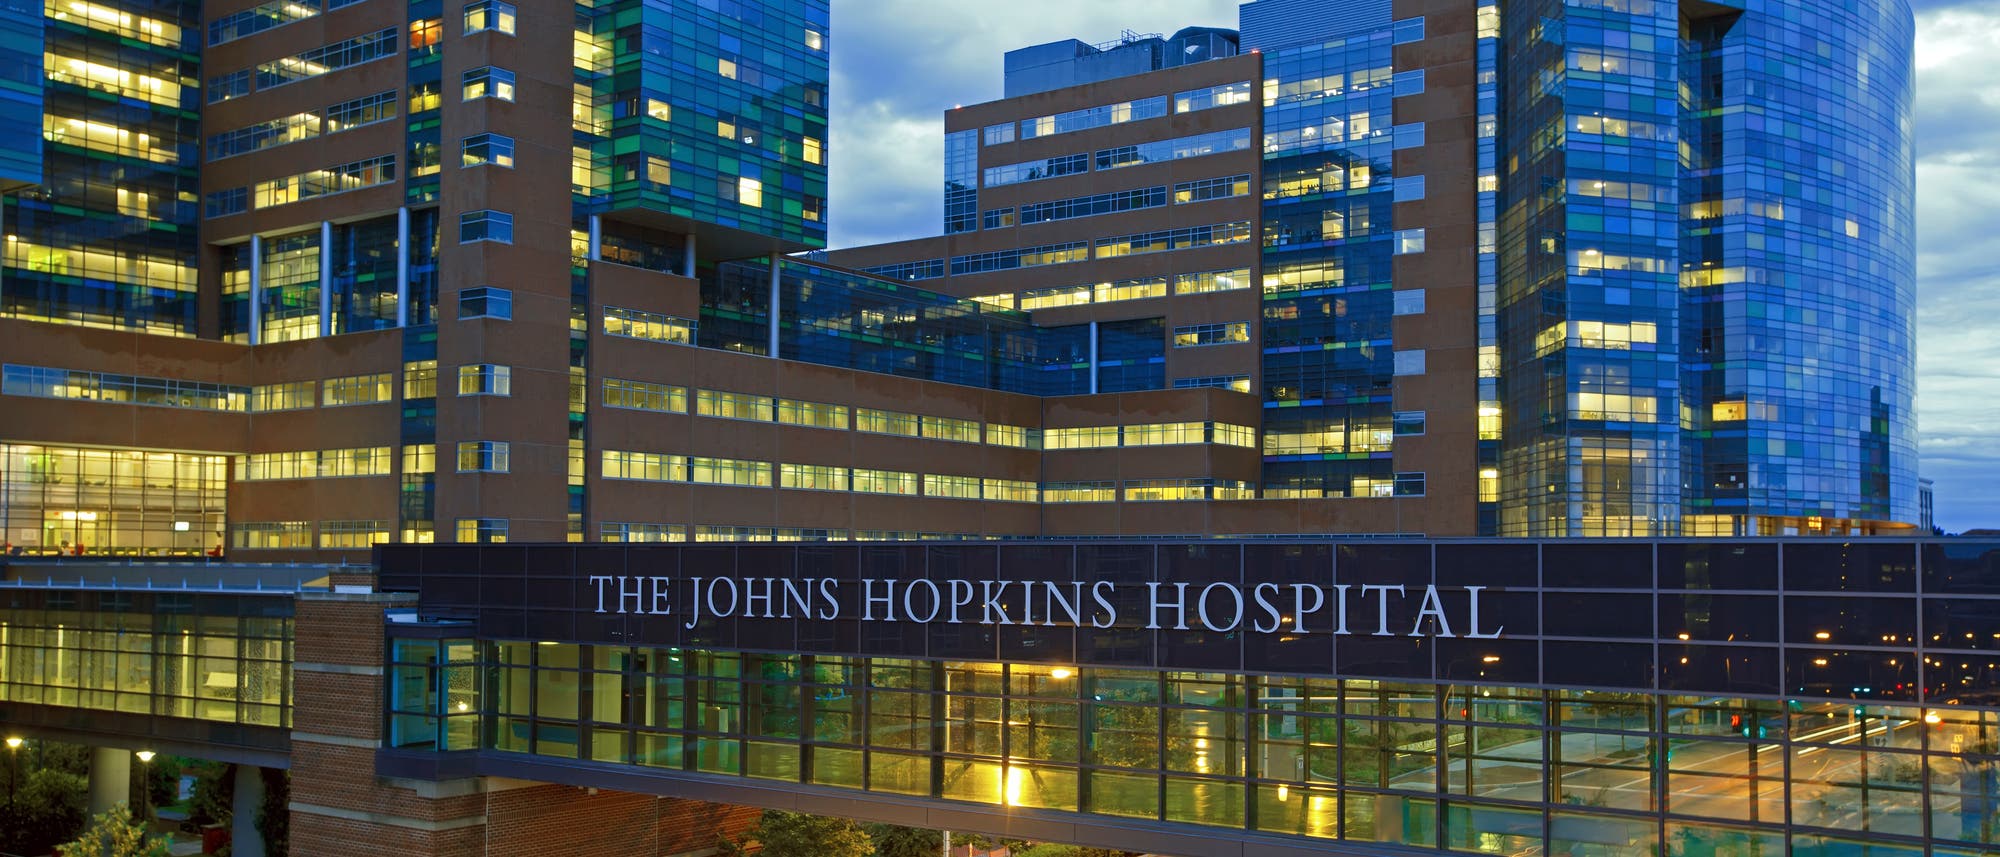 Johns Hopkins University Hospital in Baltimore